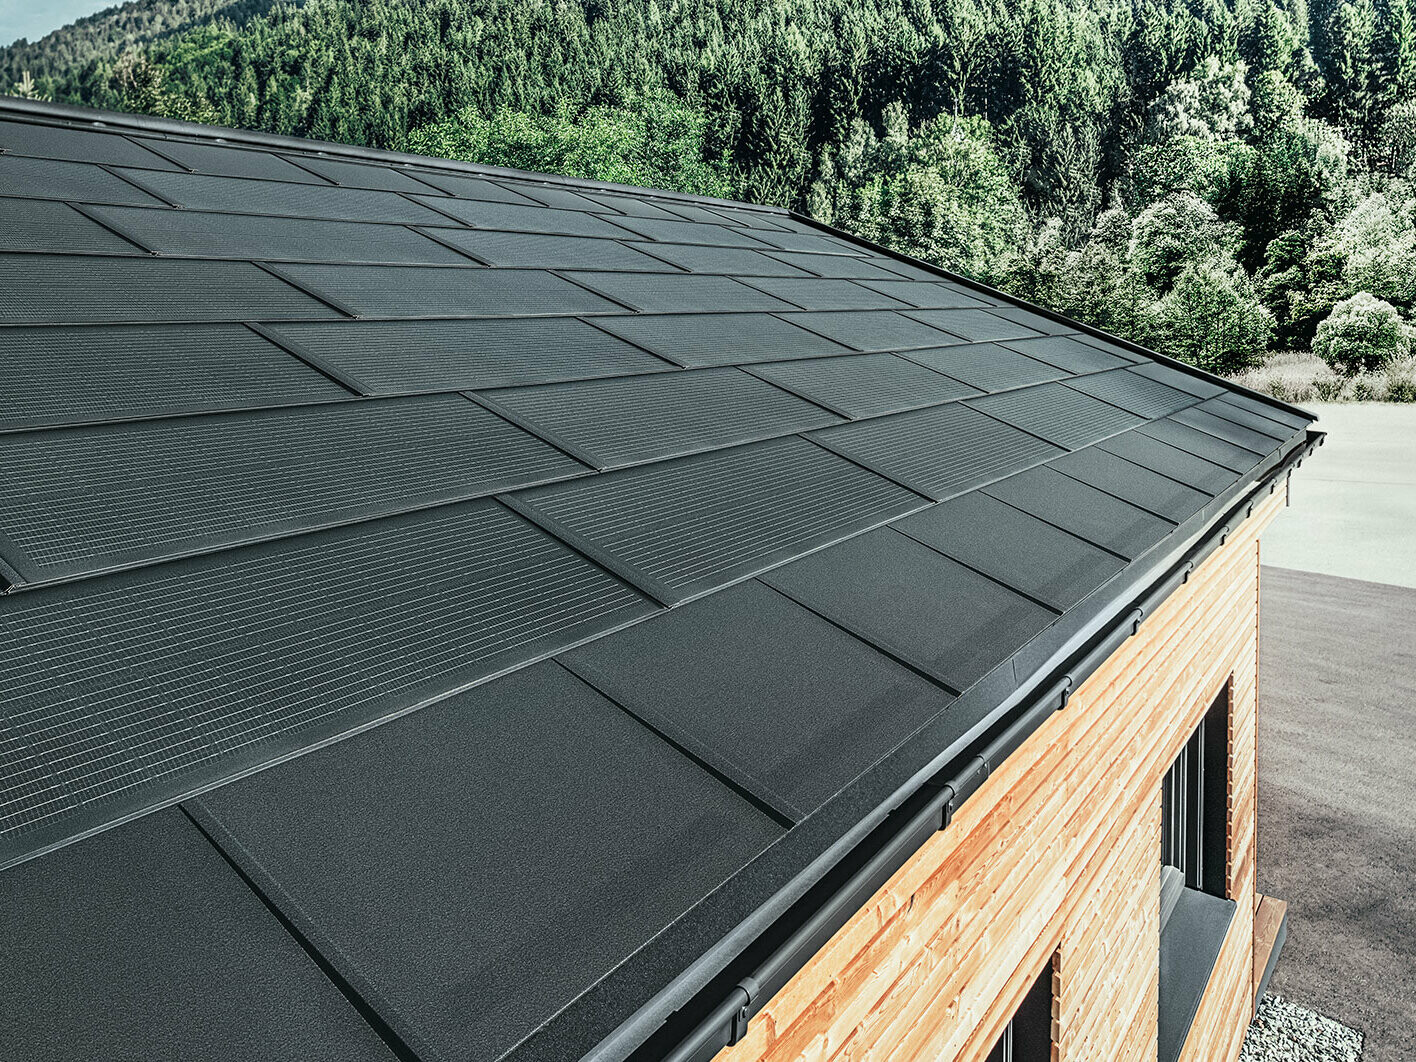 PREFA Solardachplatte mit der Dachplatte R. in Schwarz verlegt bei Winterstimmung.